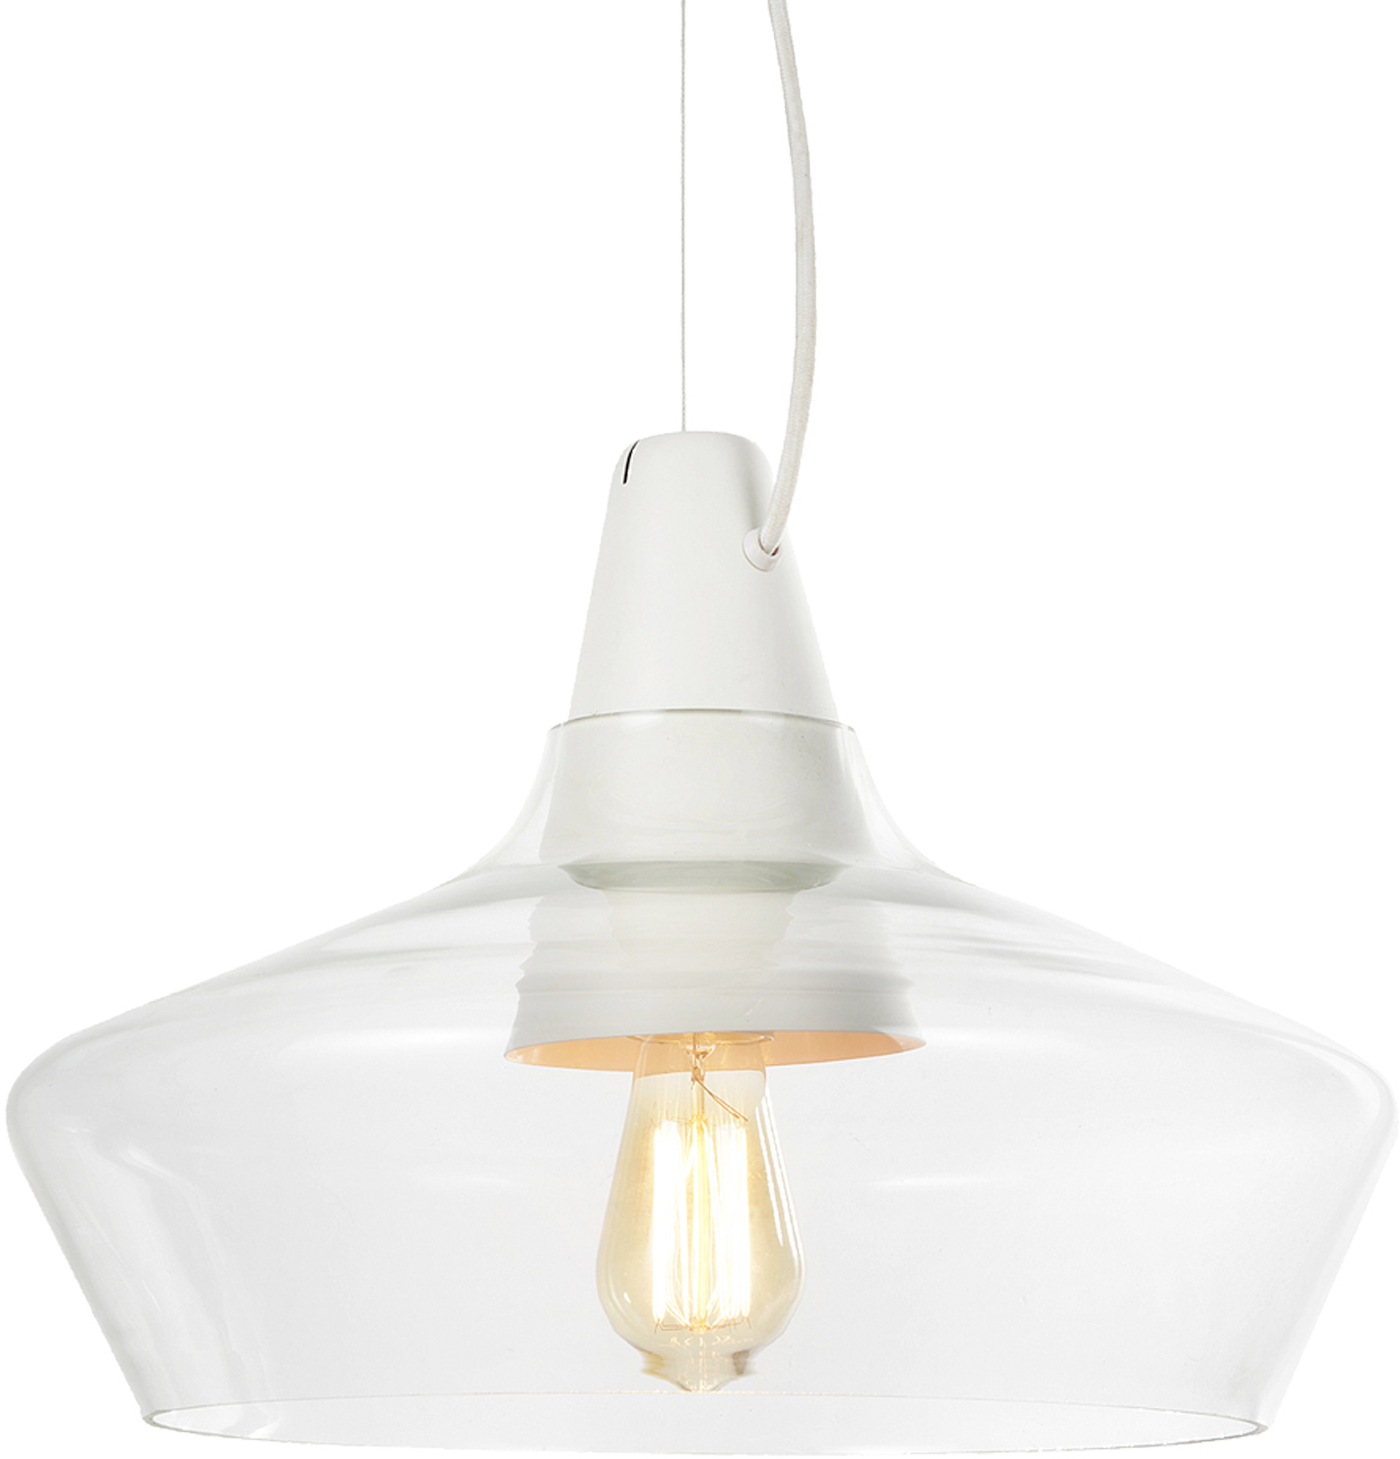 Laaka pendant light väri-variaatio Valkoinen 